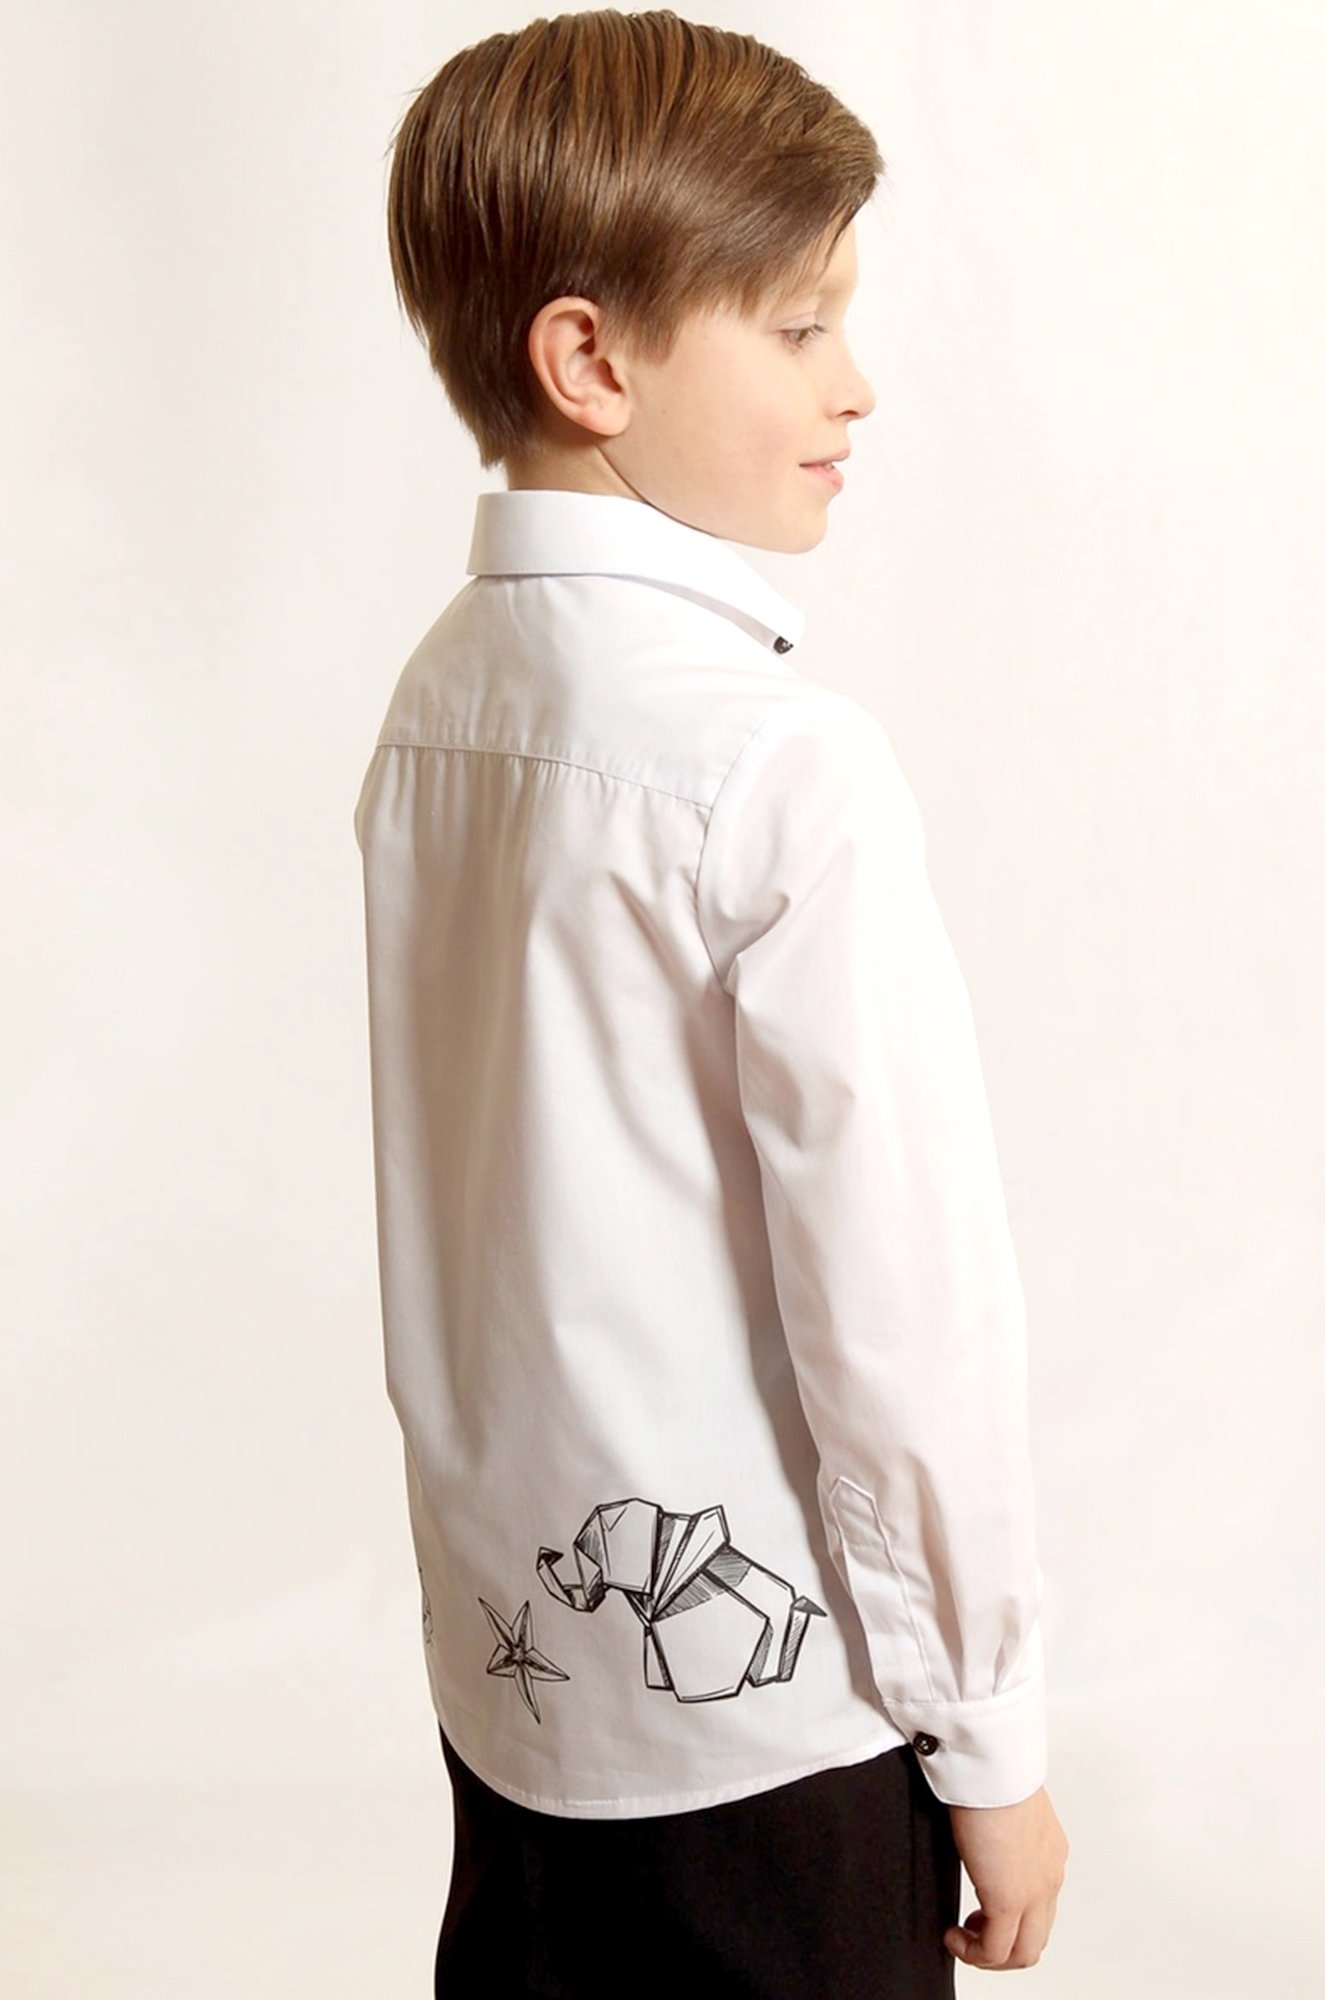 Сорочка для мальчика с длинным рукавом ATRUS